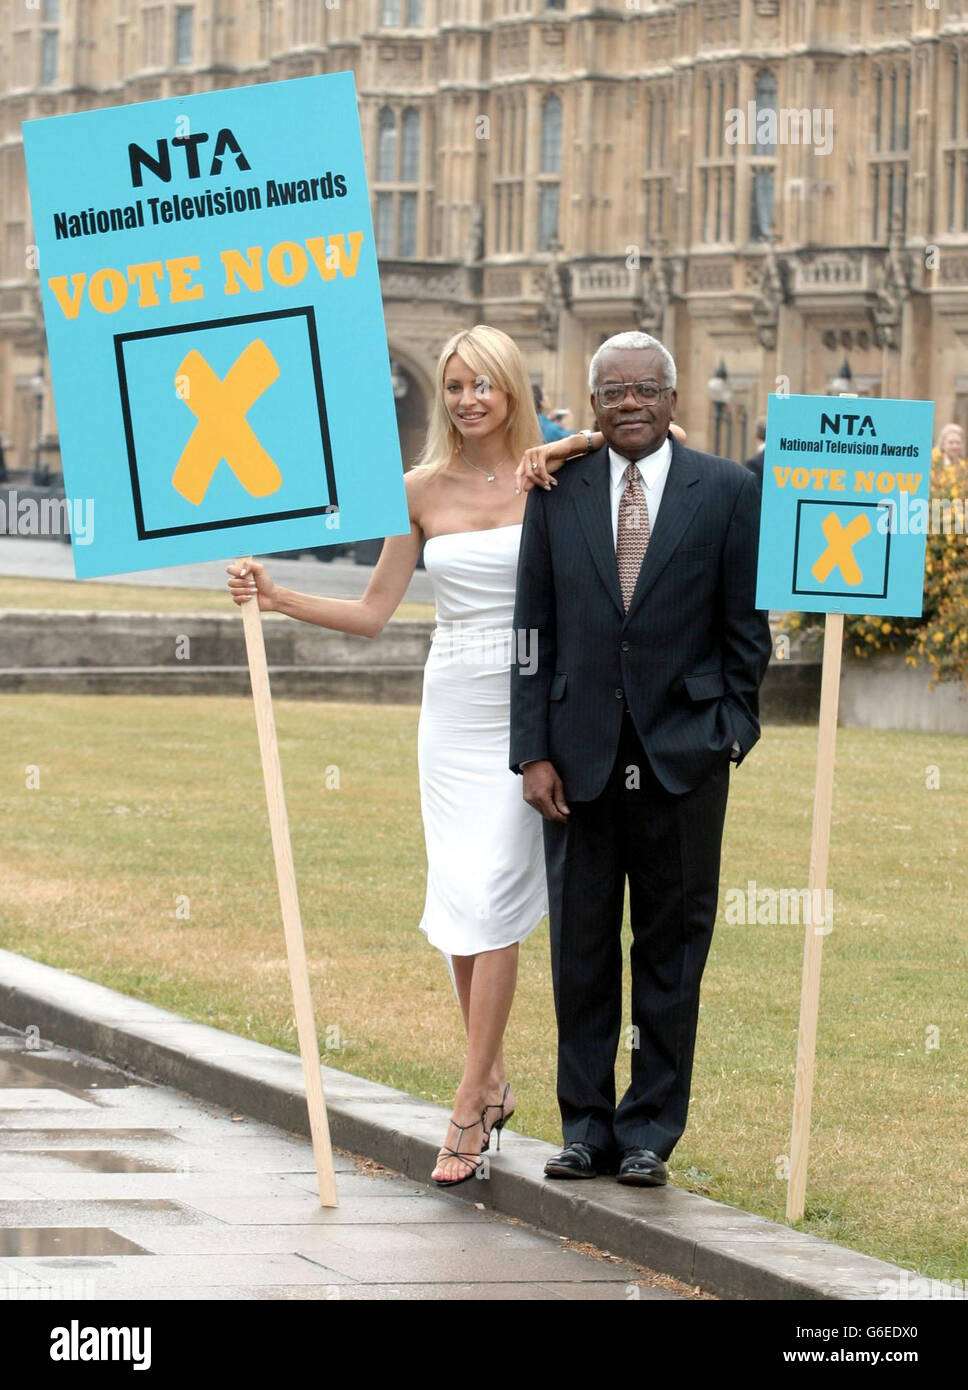 Sir Trevor McDonald e Tess Daly ad Abingdon Gardens Westminster, Londra, in occasione dell'inizio del voto per i National Television Awards (NTA). Foto Stock